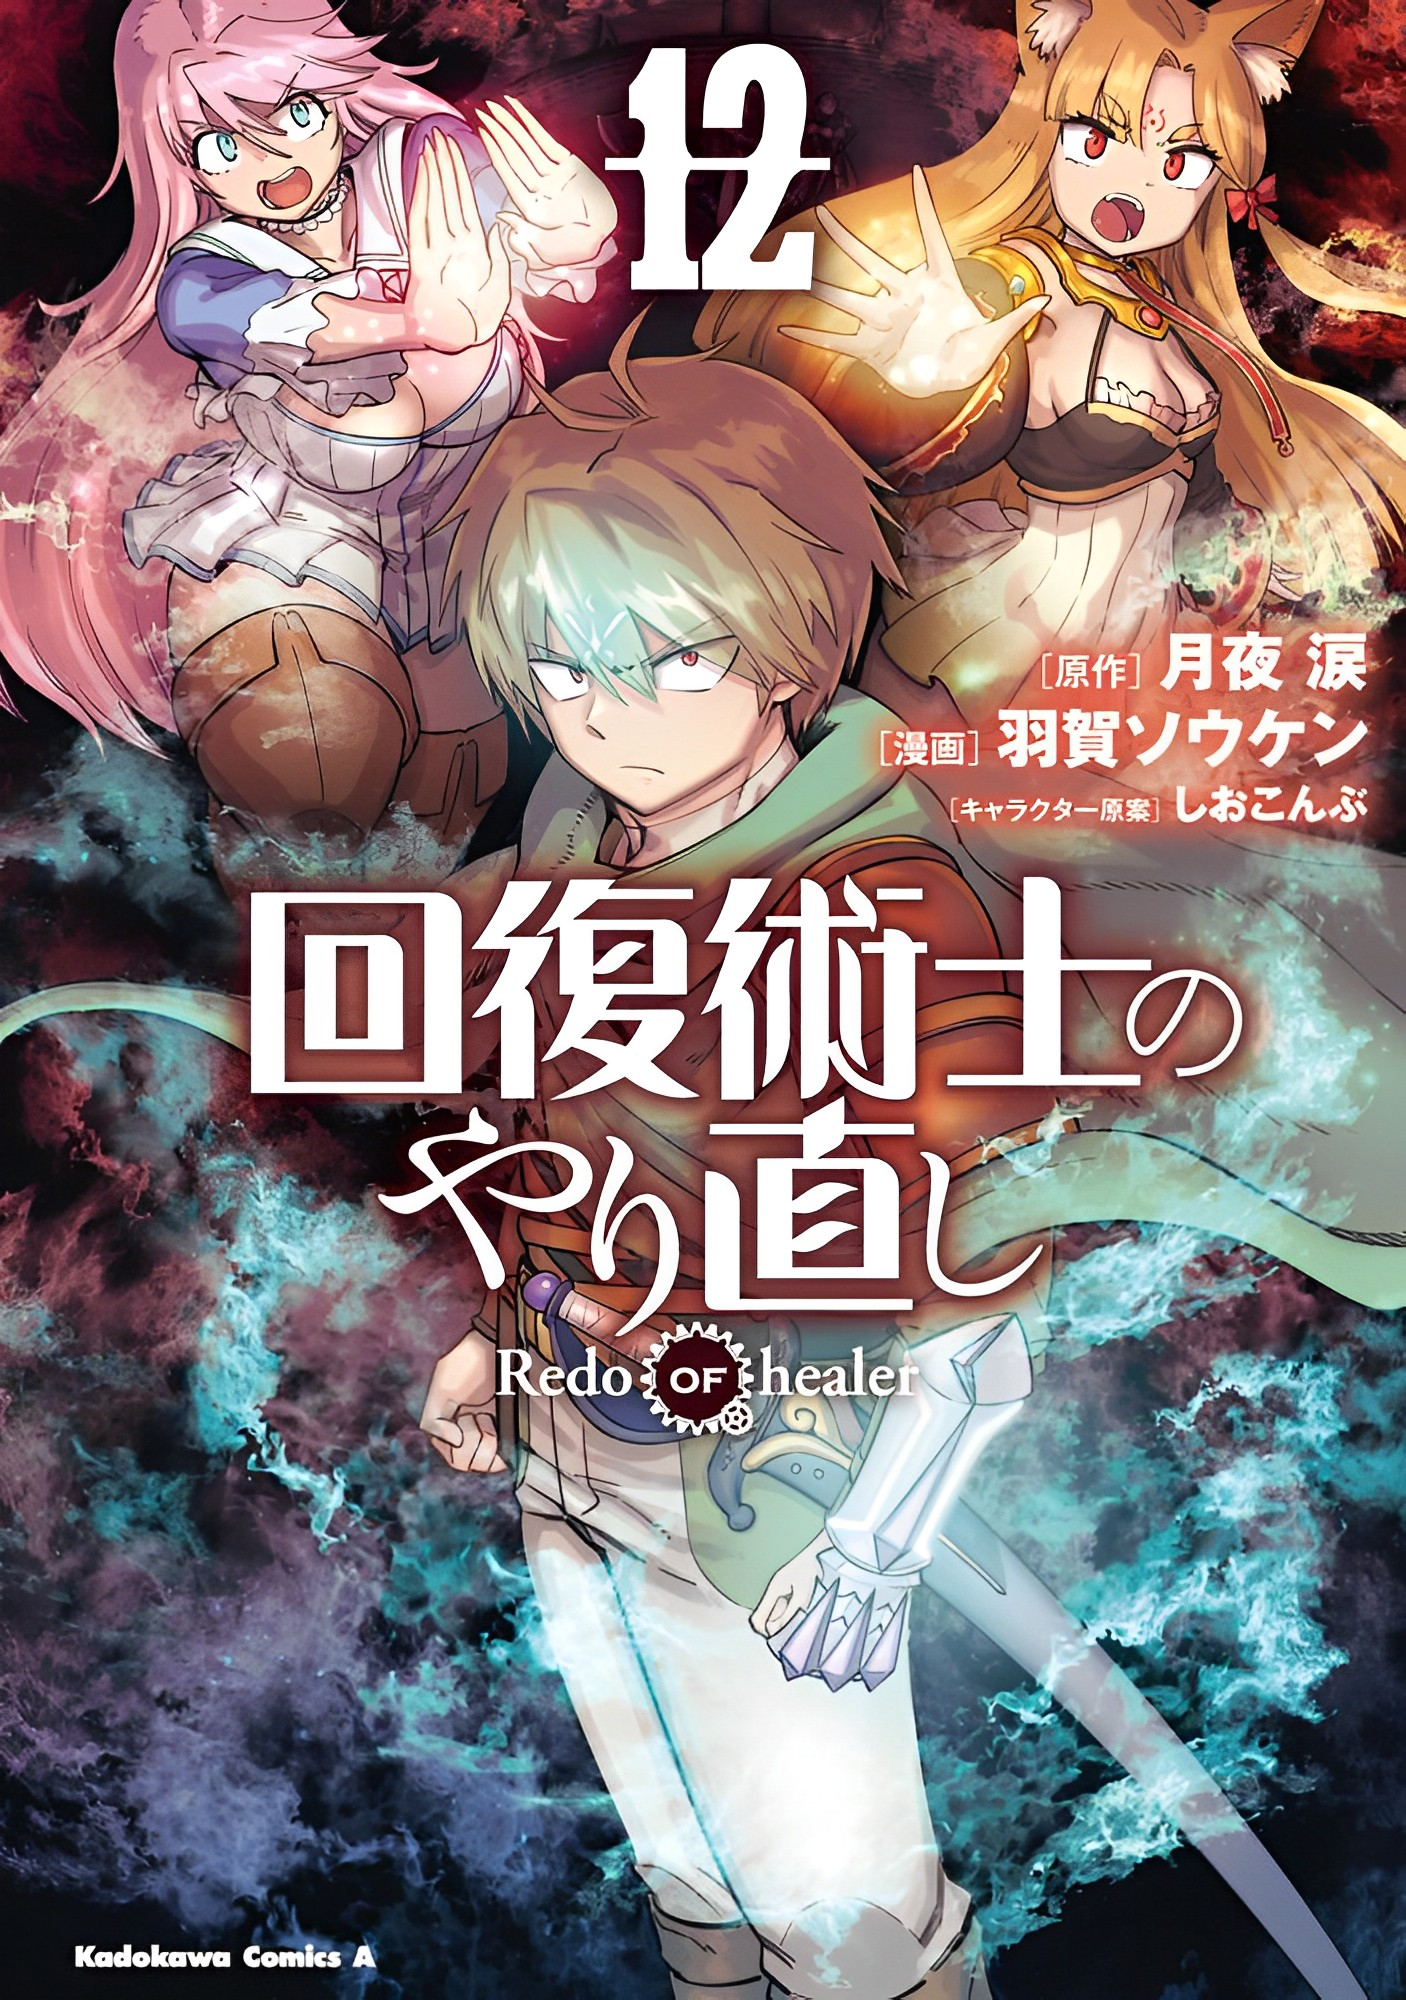 Redo Of The Healer Manga Manga Volume 12 | Kaifuku Jutsushi no Yarinaoshi Wiki | Fandom